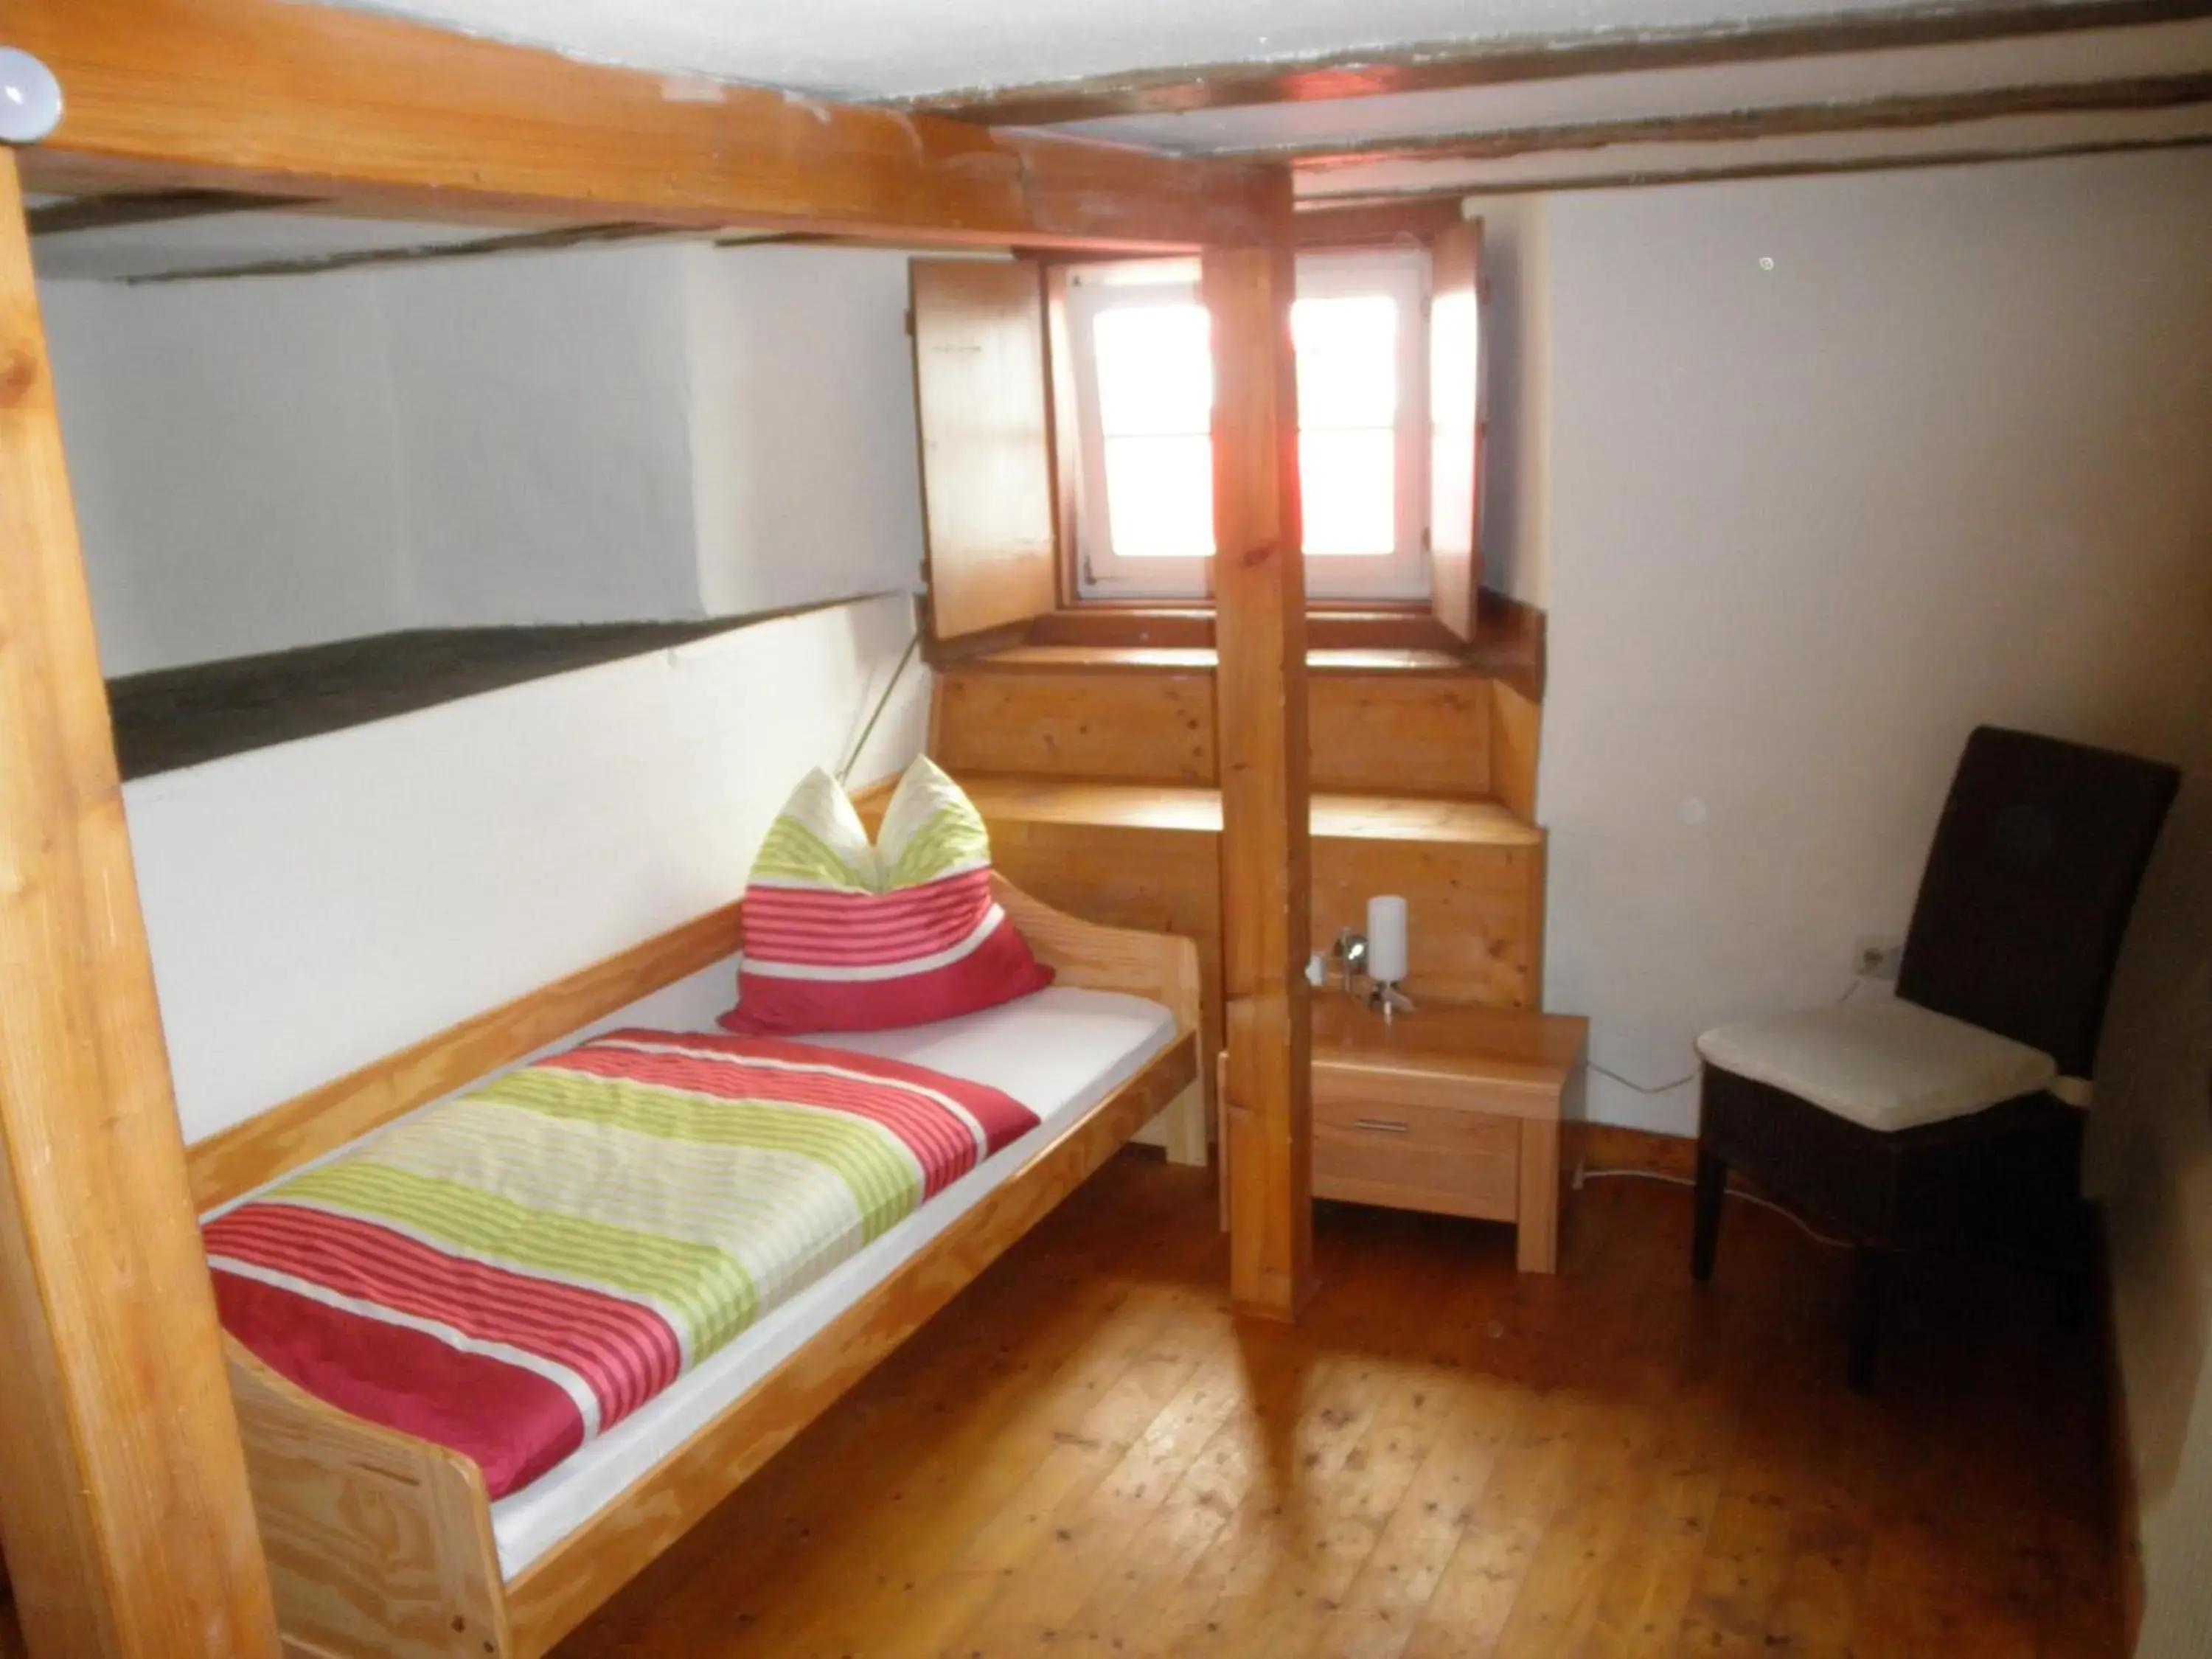 Bedroom, Bunk Bed in Altstadthaus